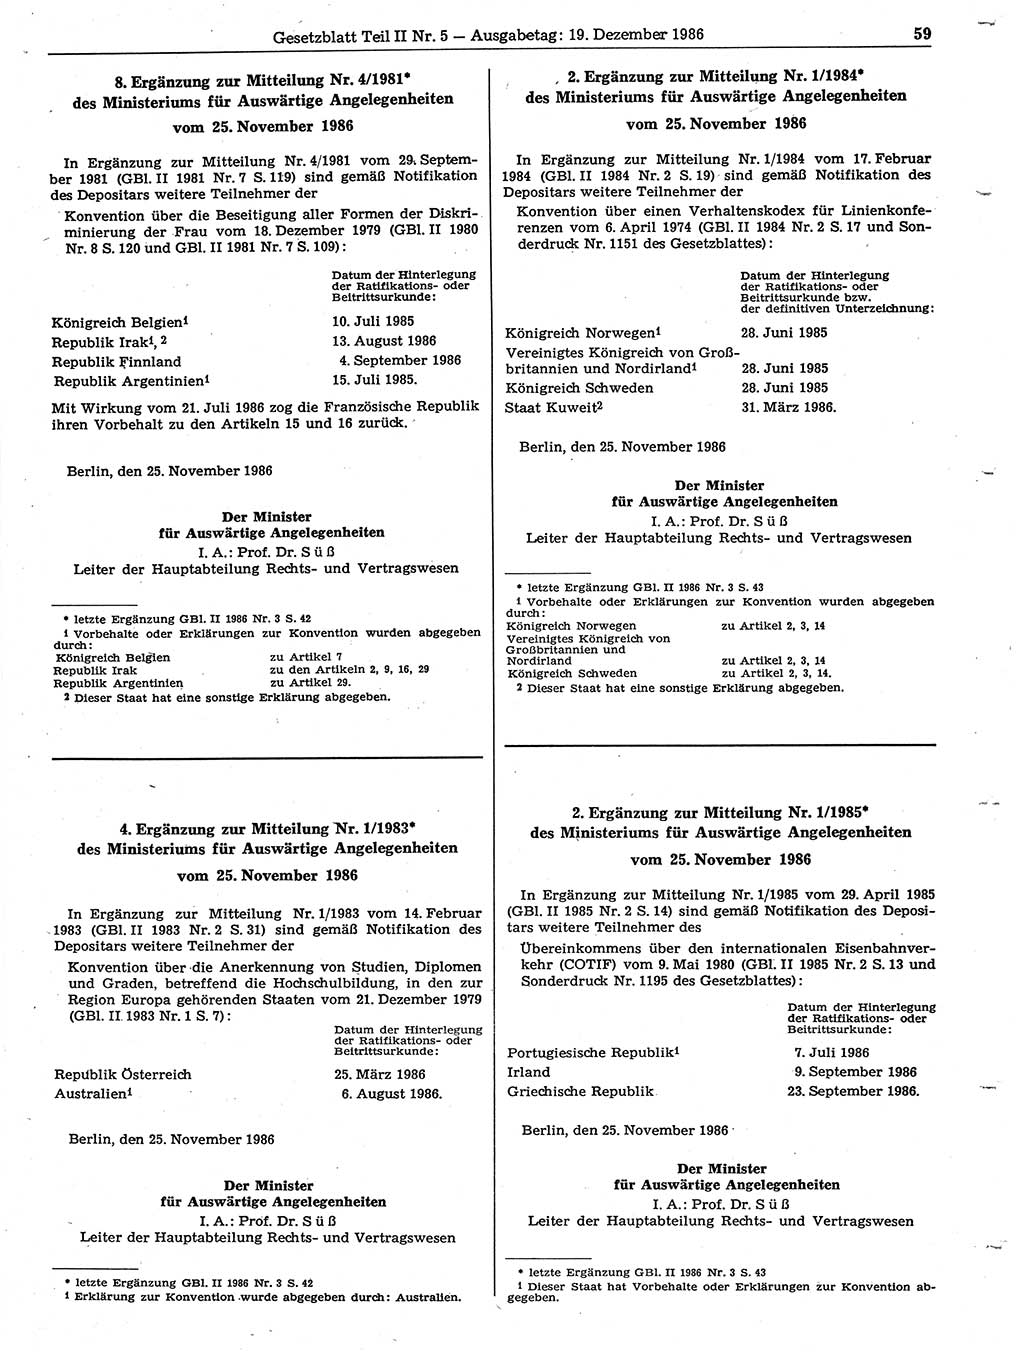 Gesetzblatt (GBl.) der Deutschen Demokratischen Republik (DDR) Teil ⅠⅠ 1986, Seite 59 (GBl. DDR ⅠⅠ 1986, S. 59)